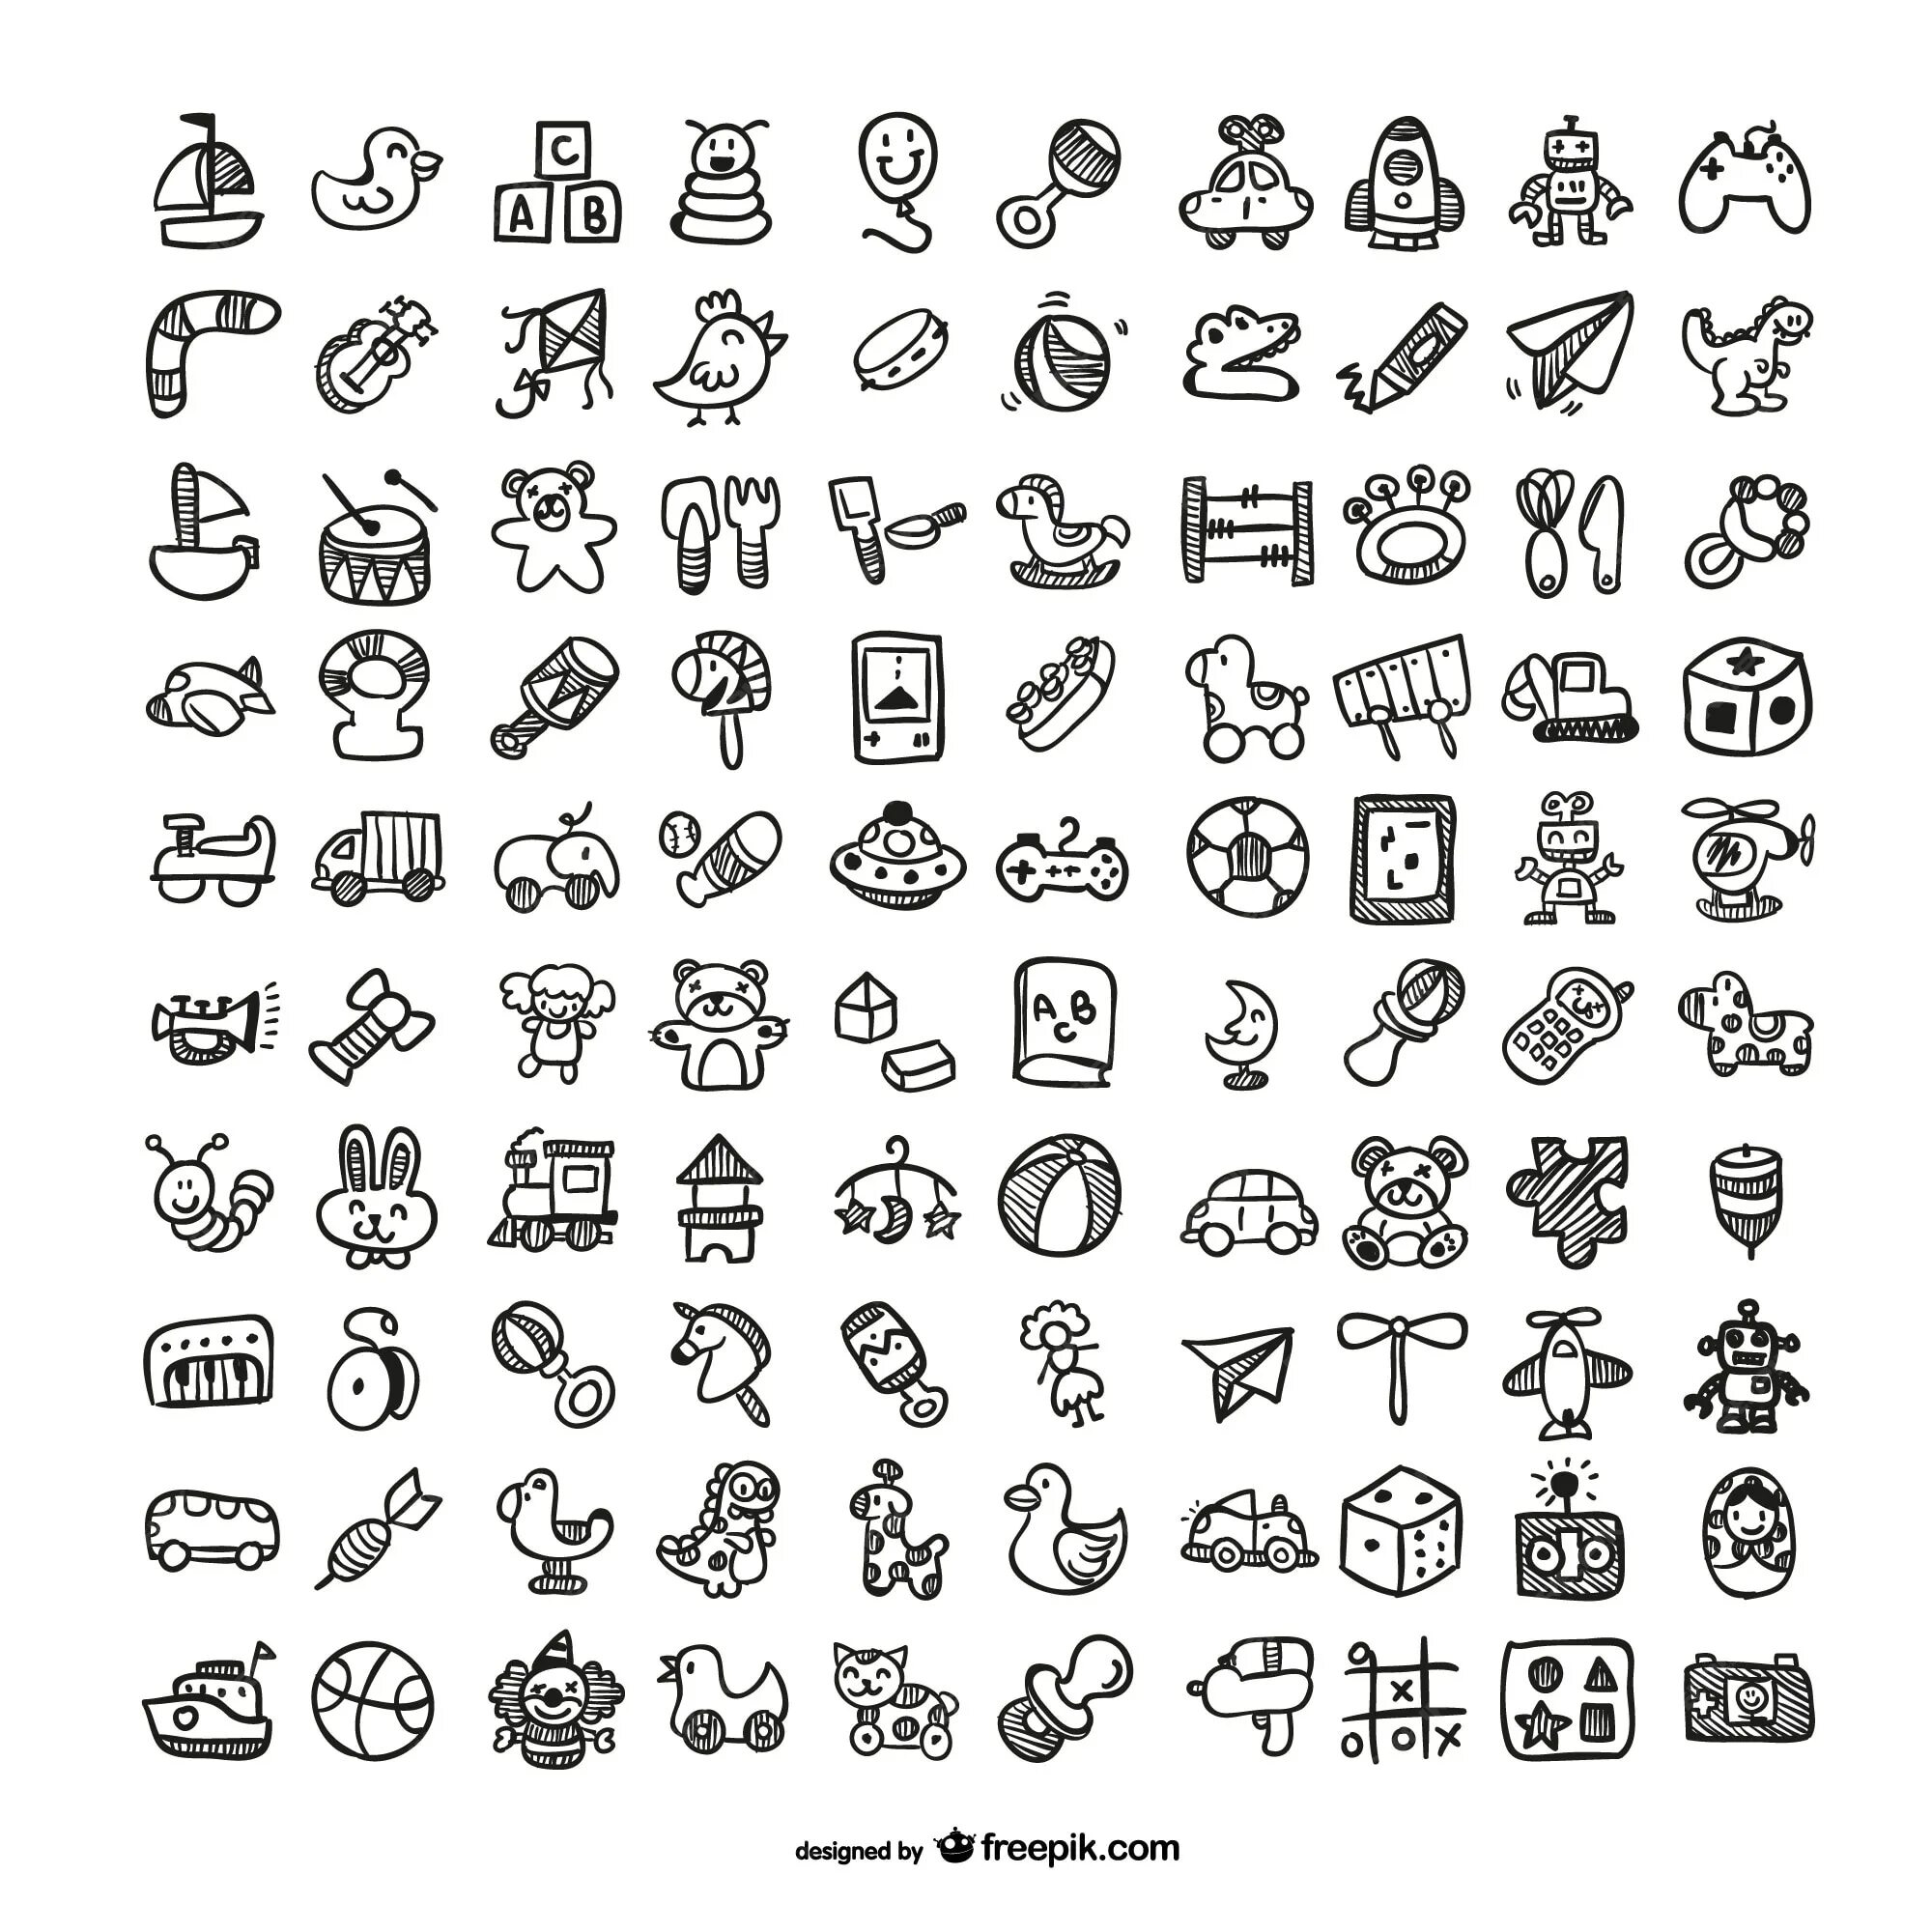 Mini icons. Маленькие значки. Эскизы для значков. Значки для детских игрушек рисование. Детские игрушки иконка.